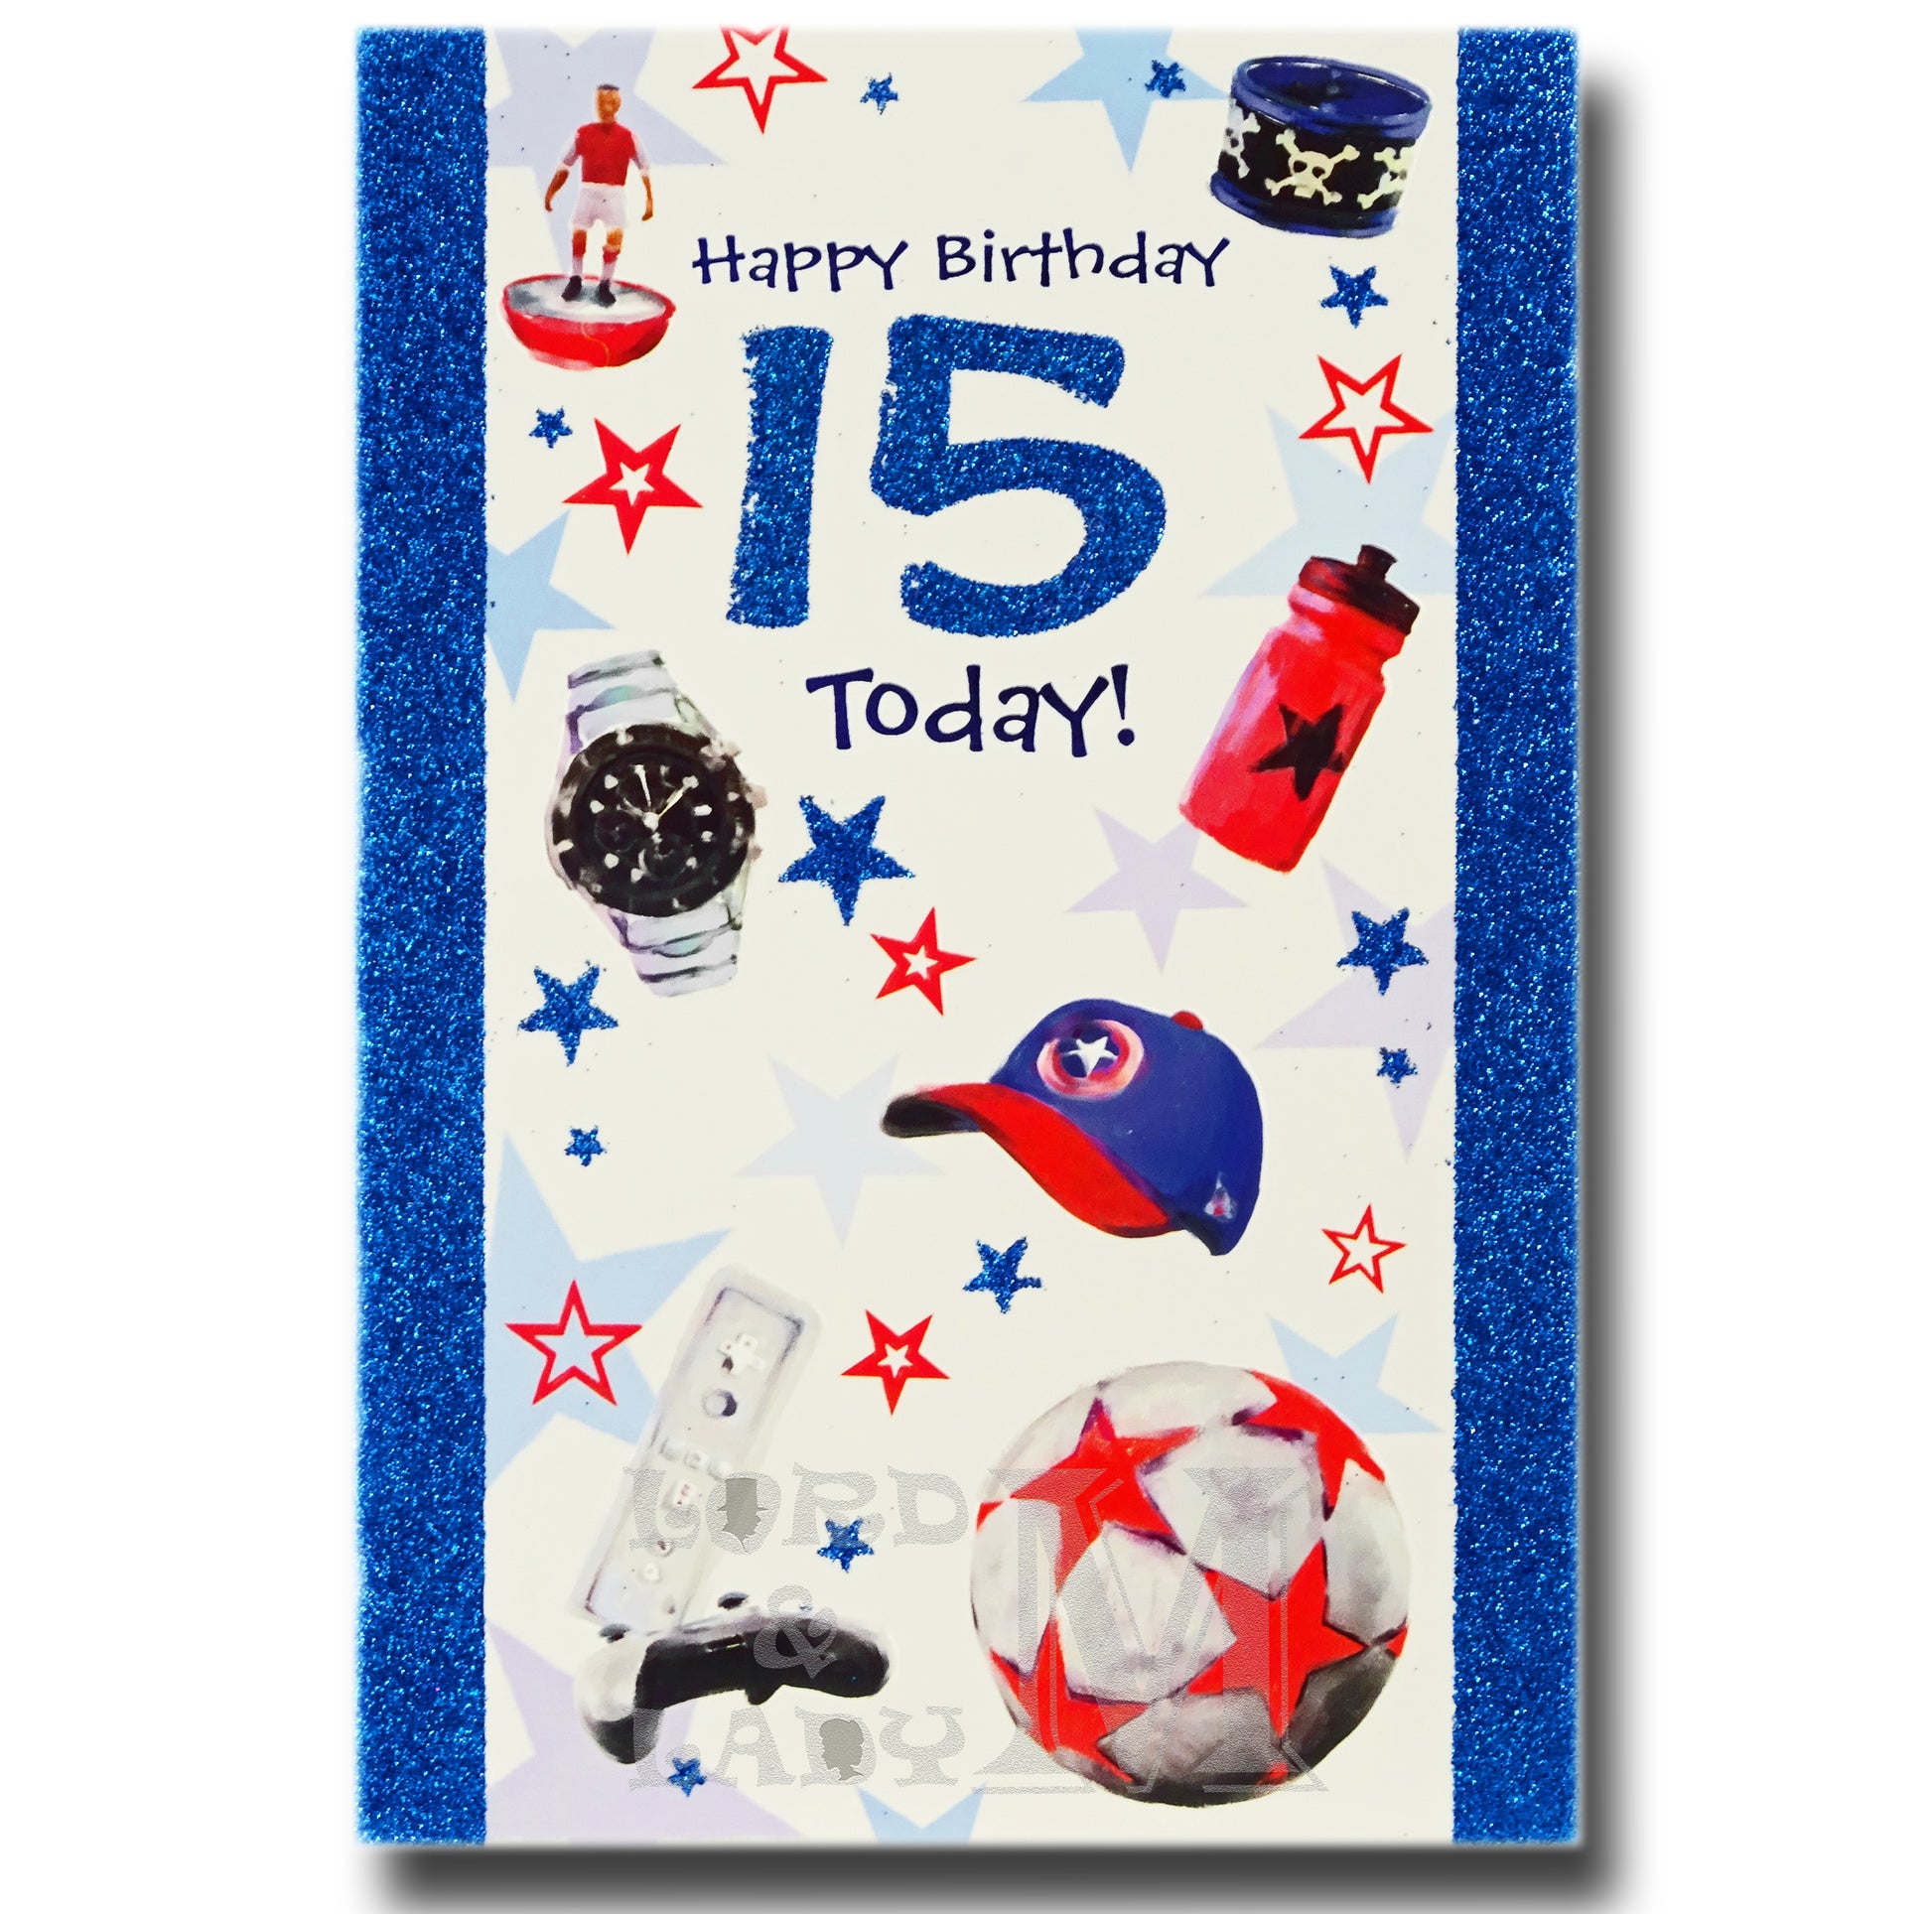 20cm - Happy Birthday 15 Today! - Ball Cap - DGC